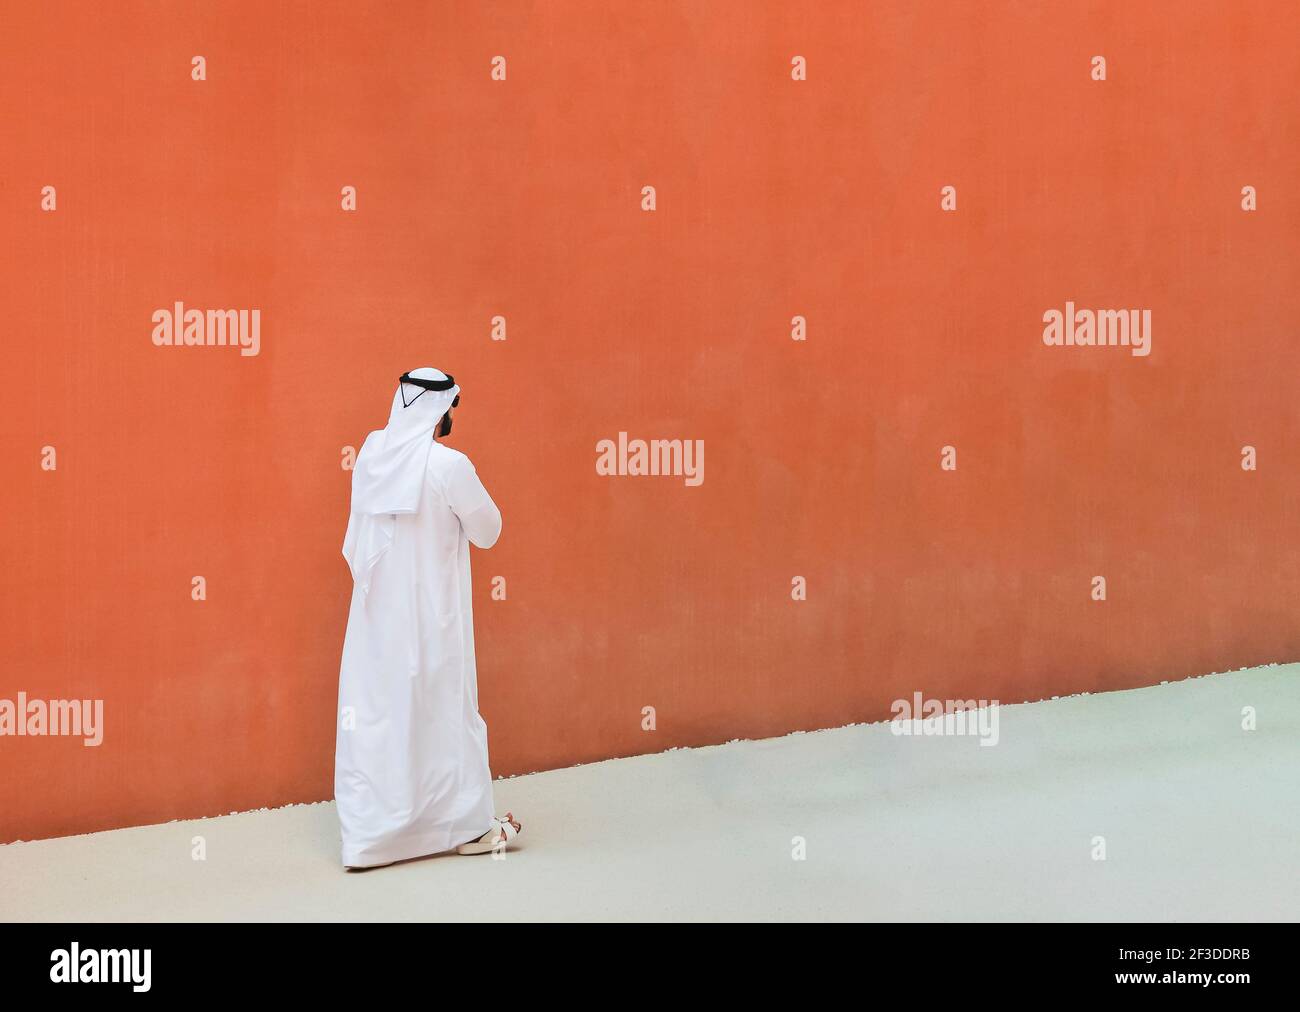 Arabischer Mann mit traditionellen emirates Kleidung zu Fuß im Freien in der Straße vor einer orangefarbenen Wand Hintergrund - arabische Ethnie und muslimische Religion Konz Stockfoto